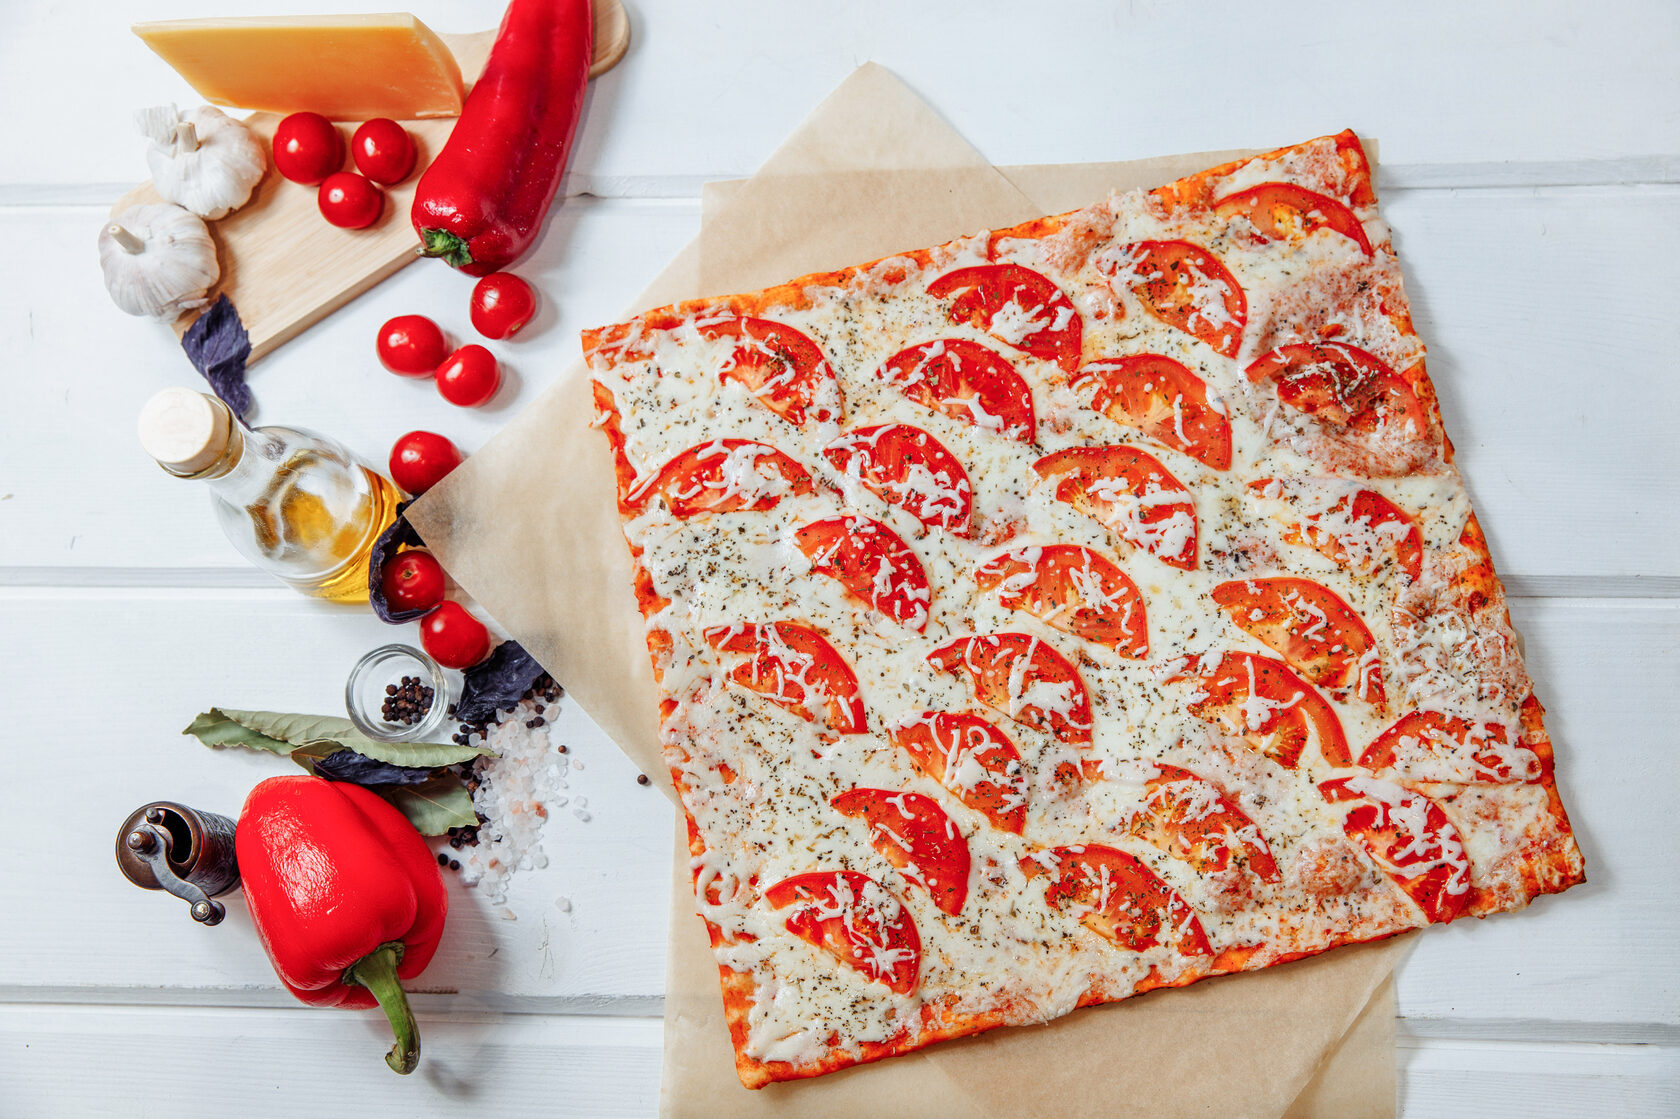 тесто для пиццы маргарита тонкое и мягкое как в пиццерии фото 78